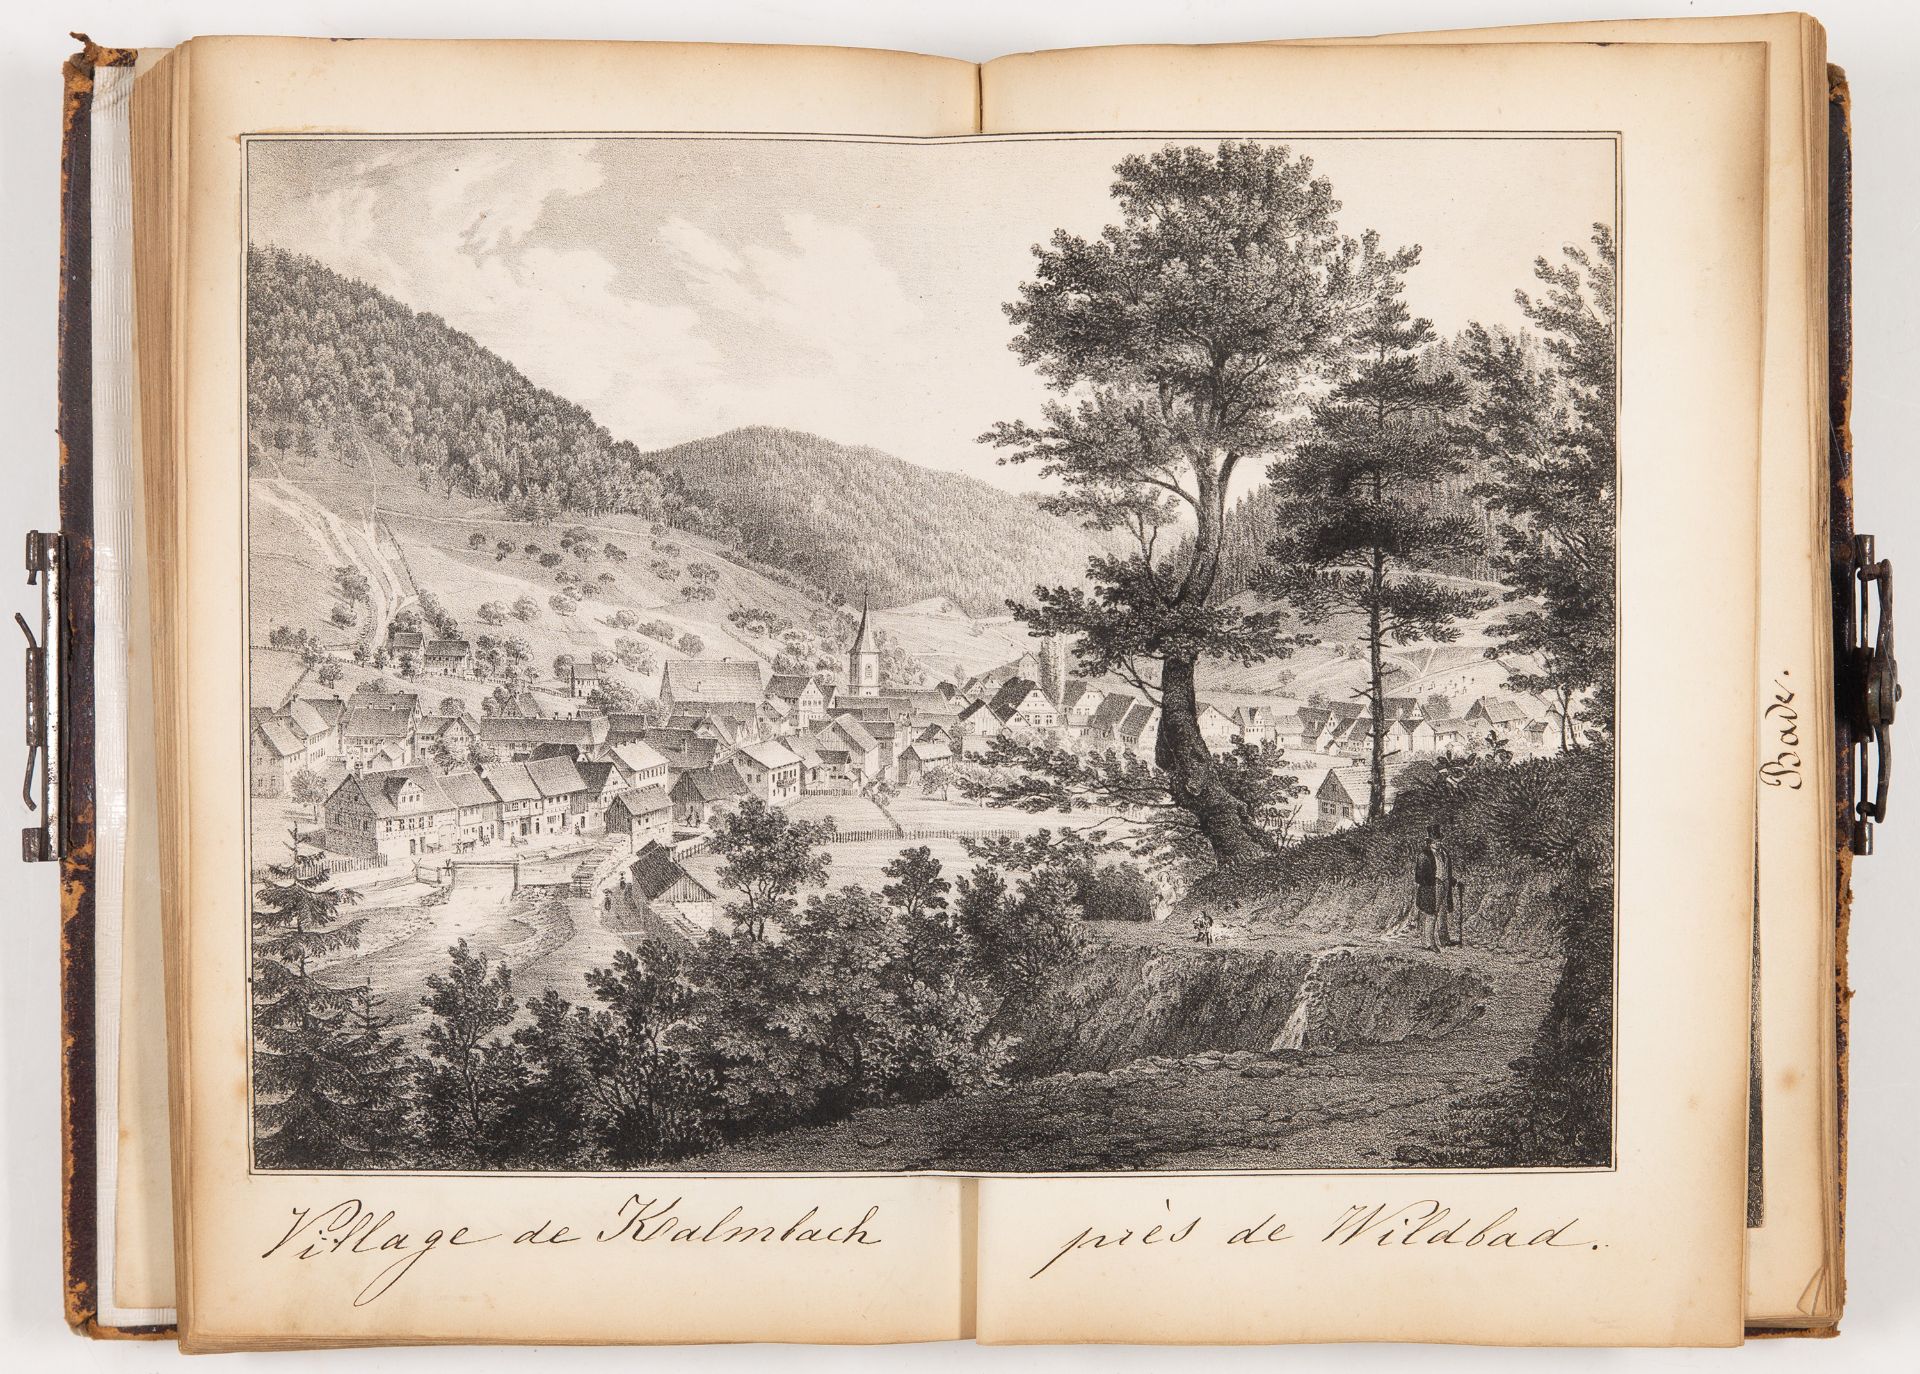 Souvenirs de voyages 1854. Privates Sammelalbum mit Ansichten und Reiseandenken. - Bild 2 aus 3